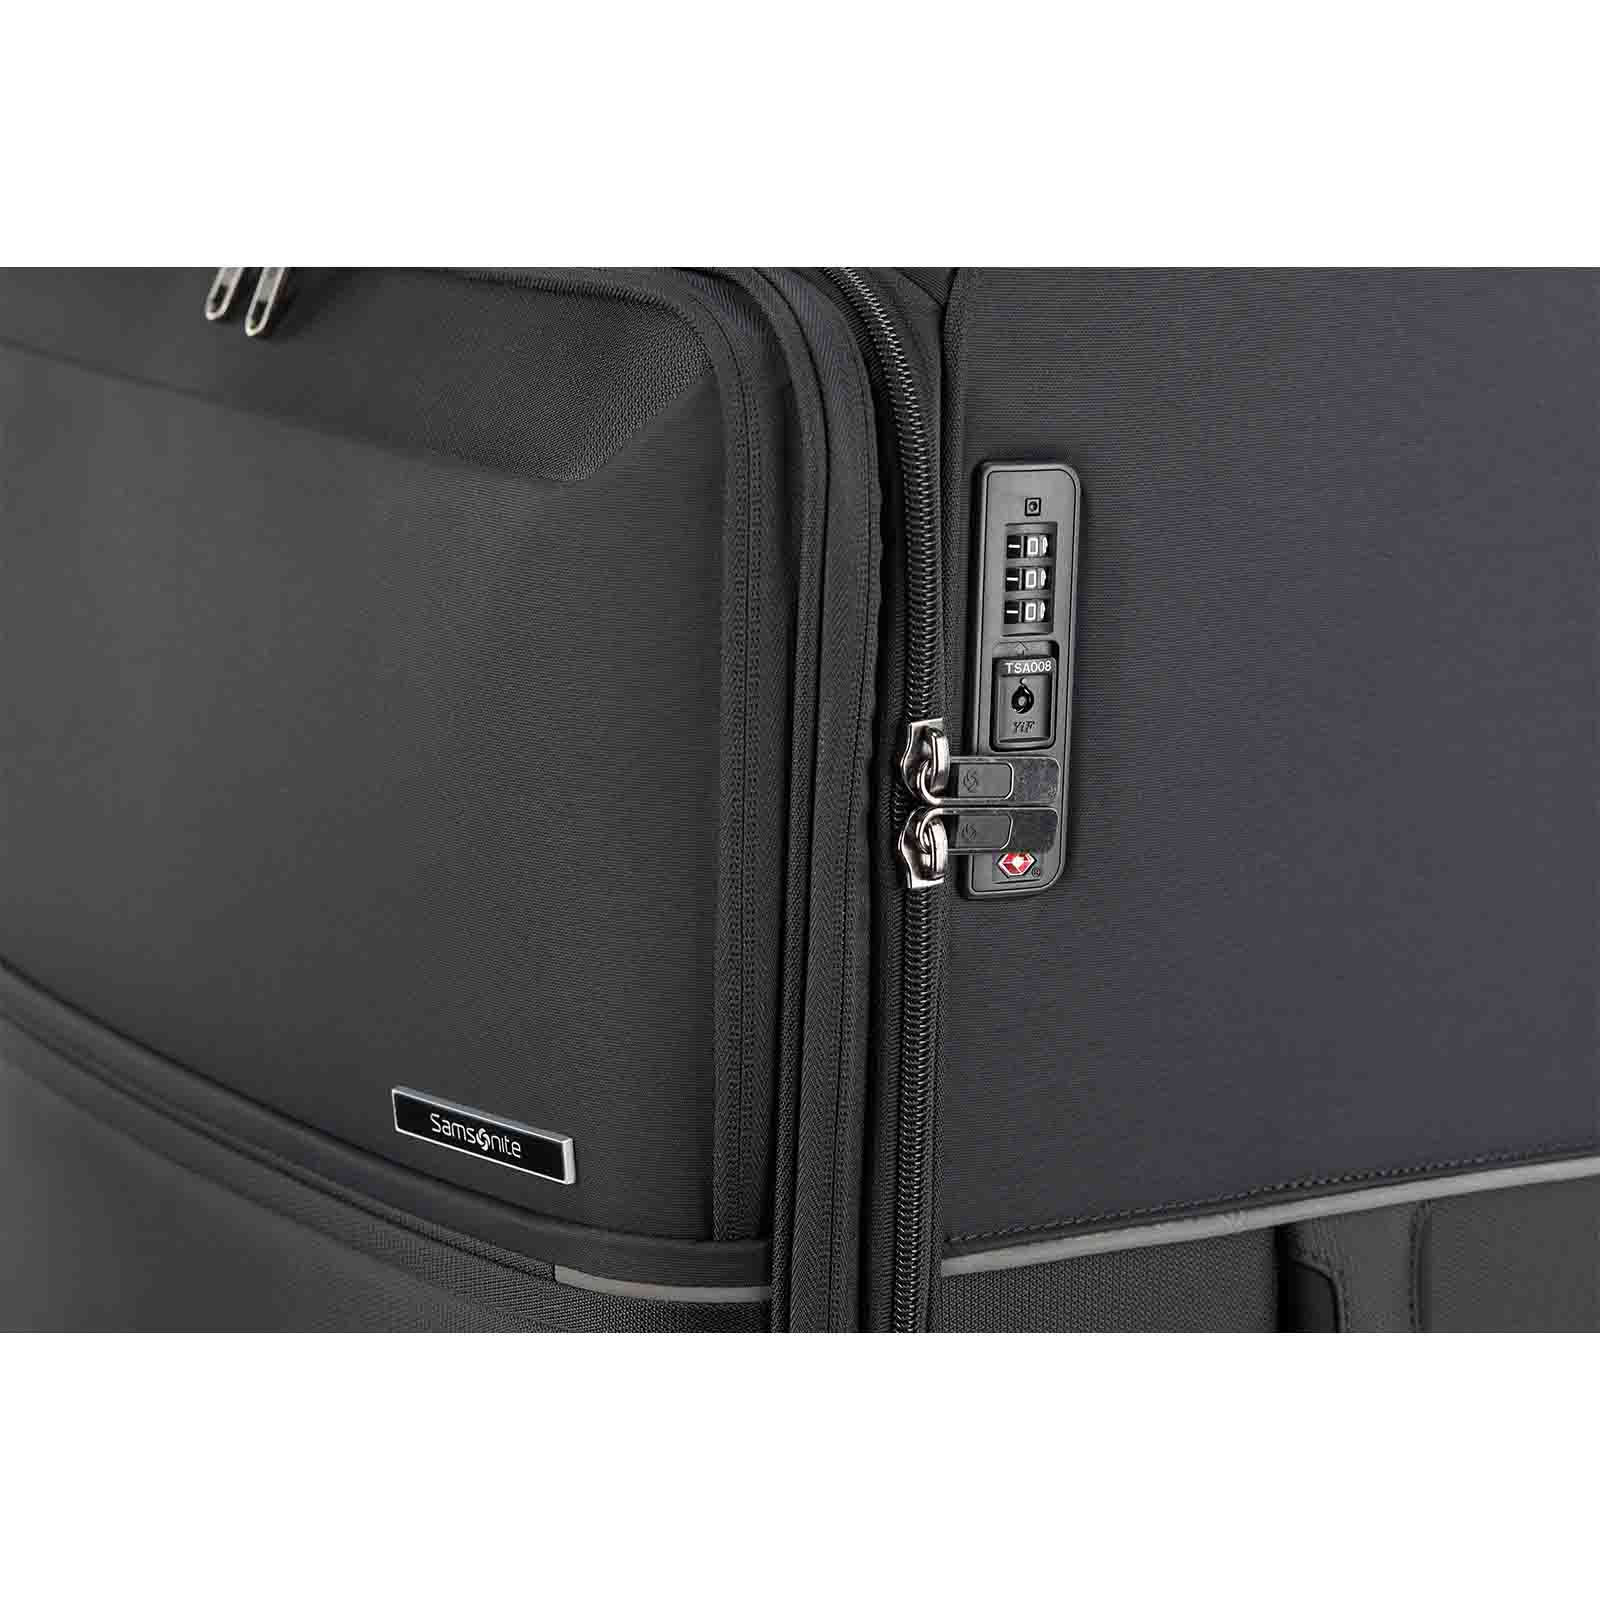 Samsonite-73h-78cm-Suitcase-Black-Lock